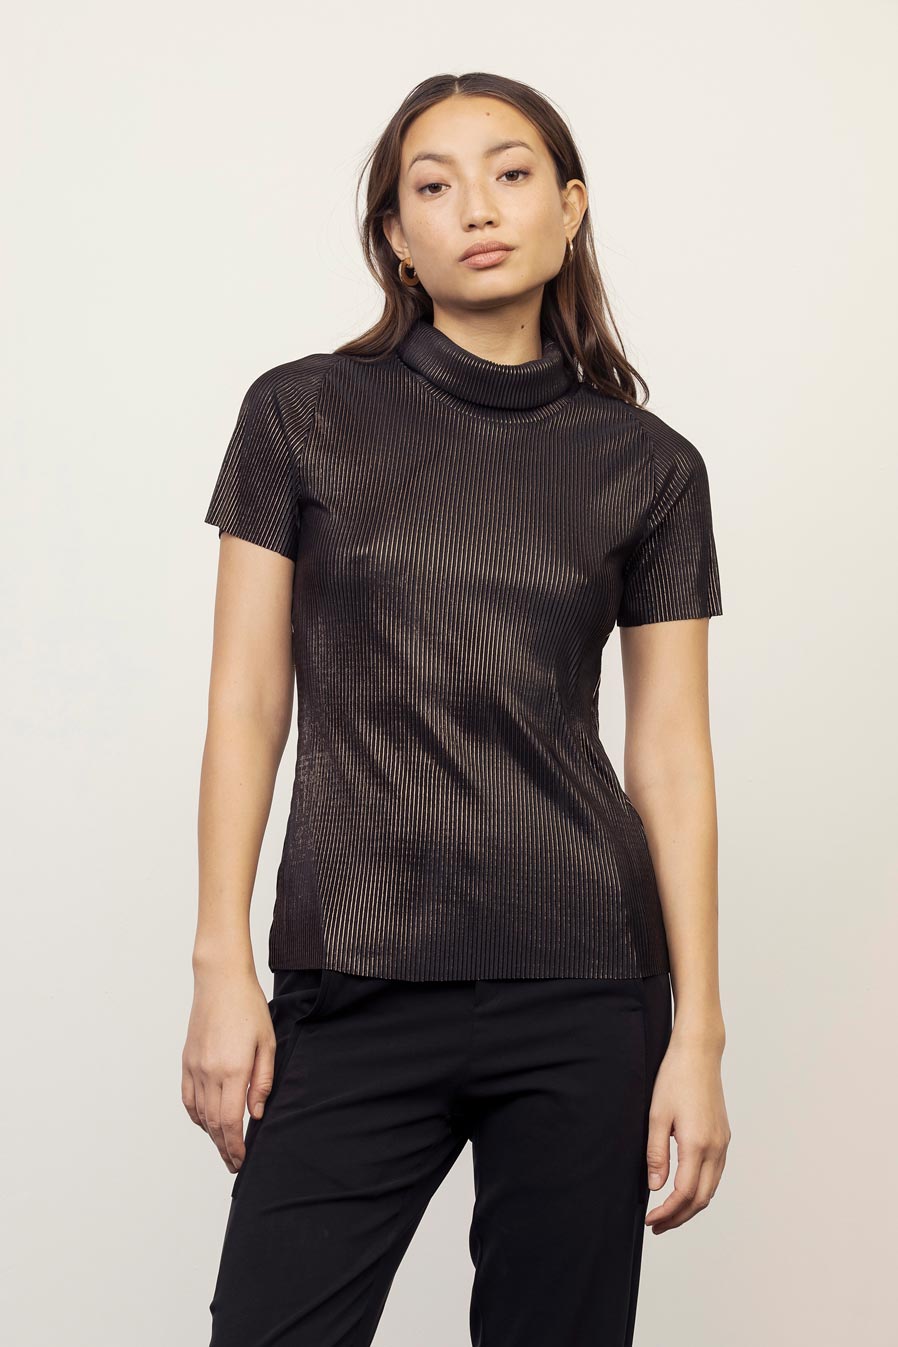 BRUNO T-Shirt (XS-M) - Black \ Bronze